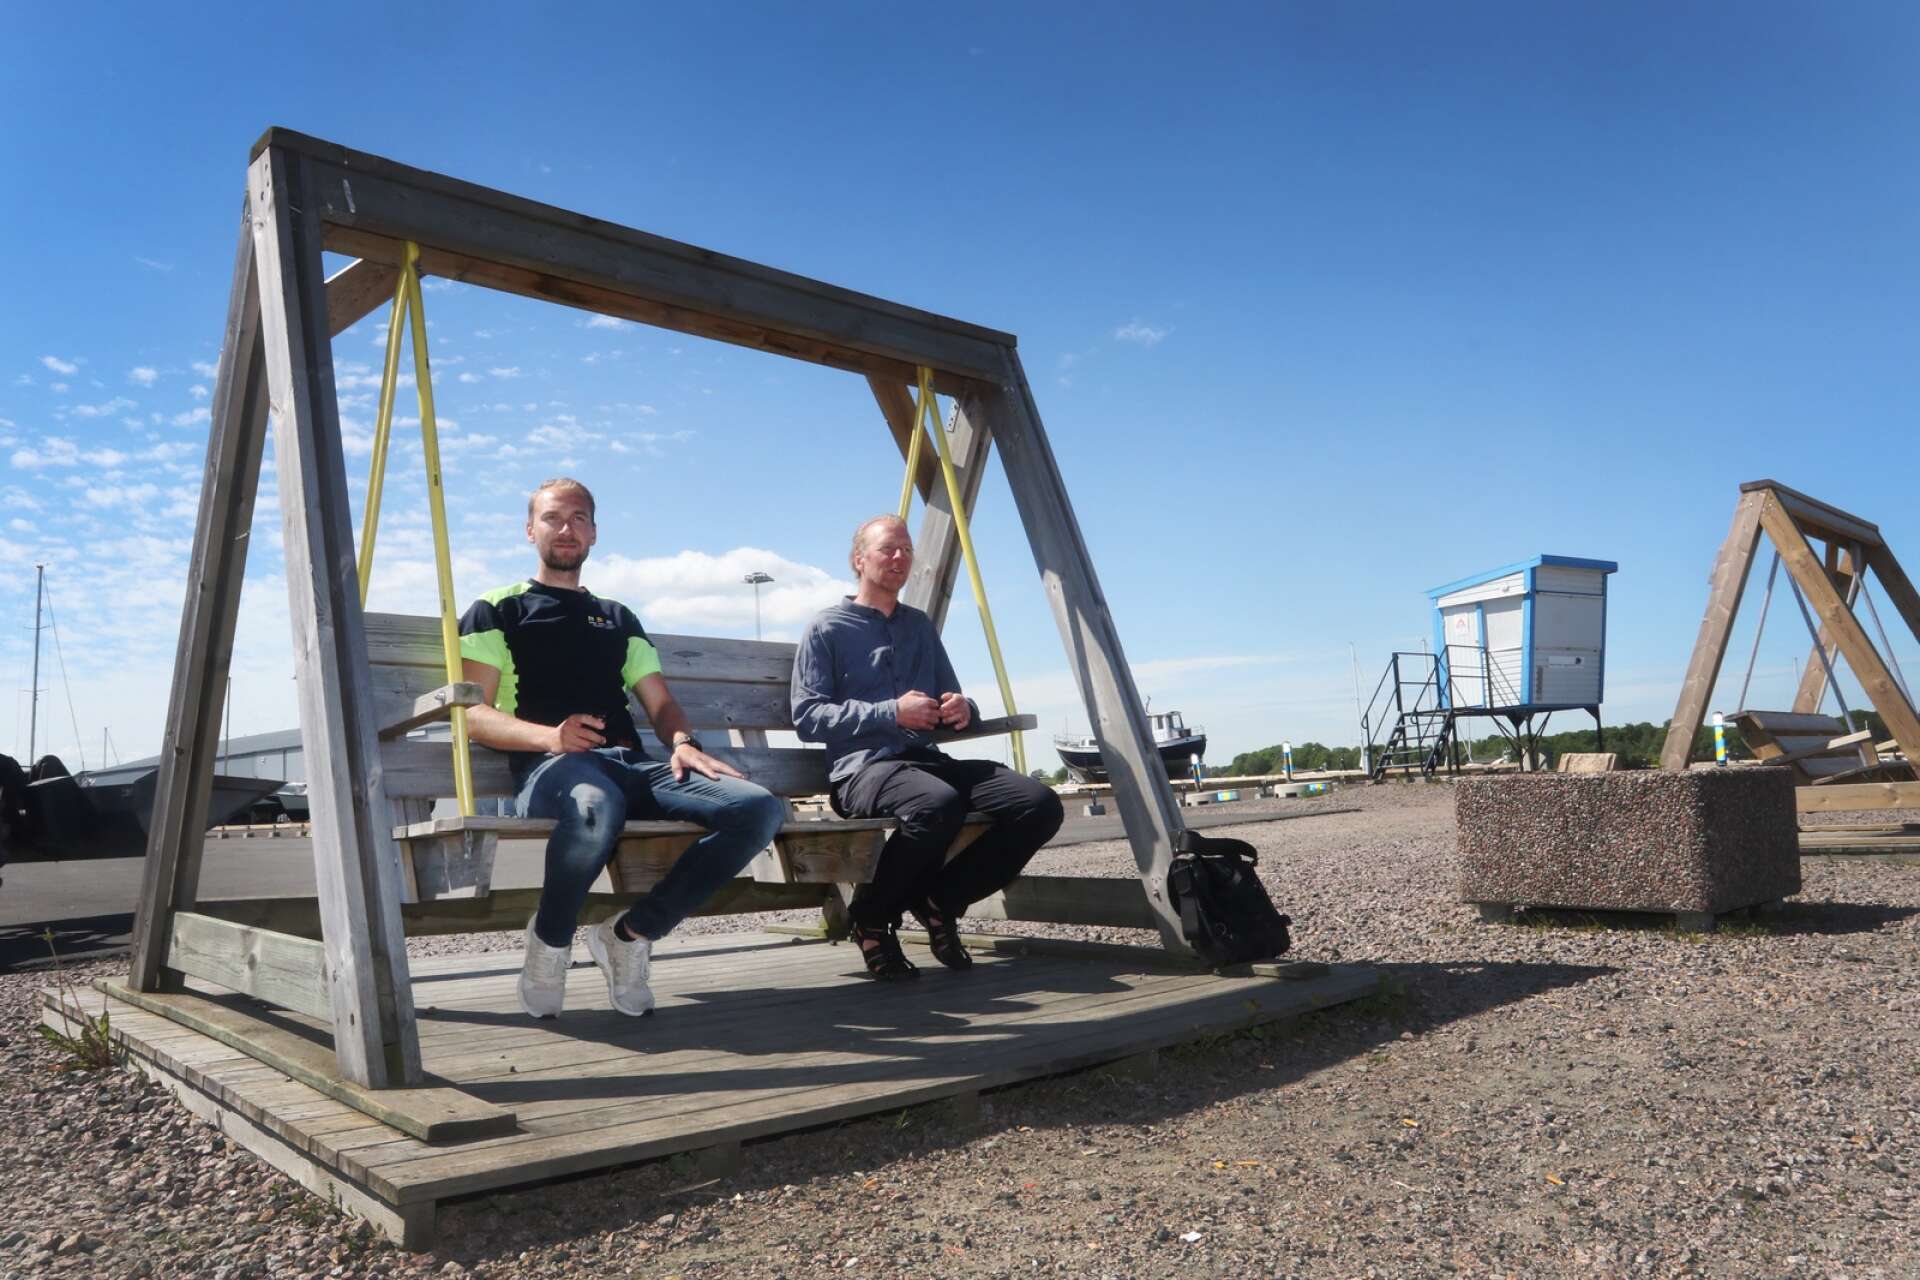 I norra hamnen försöker kommunen skapa naturliga platser att umgås. Bland annat kommer grillplatser skapas, berättar arbetsledaren Linus Engqvist och hamningenjören Björn Isvi.